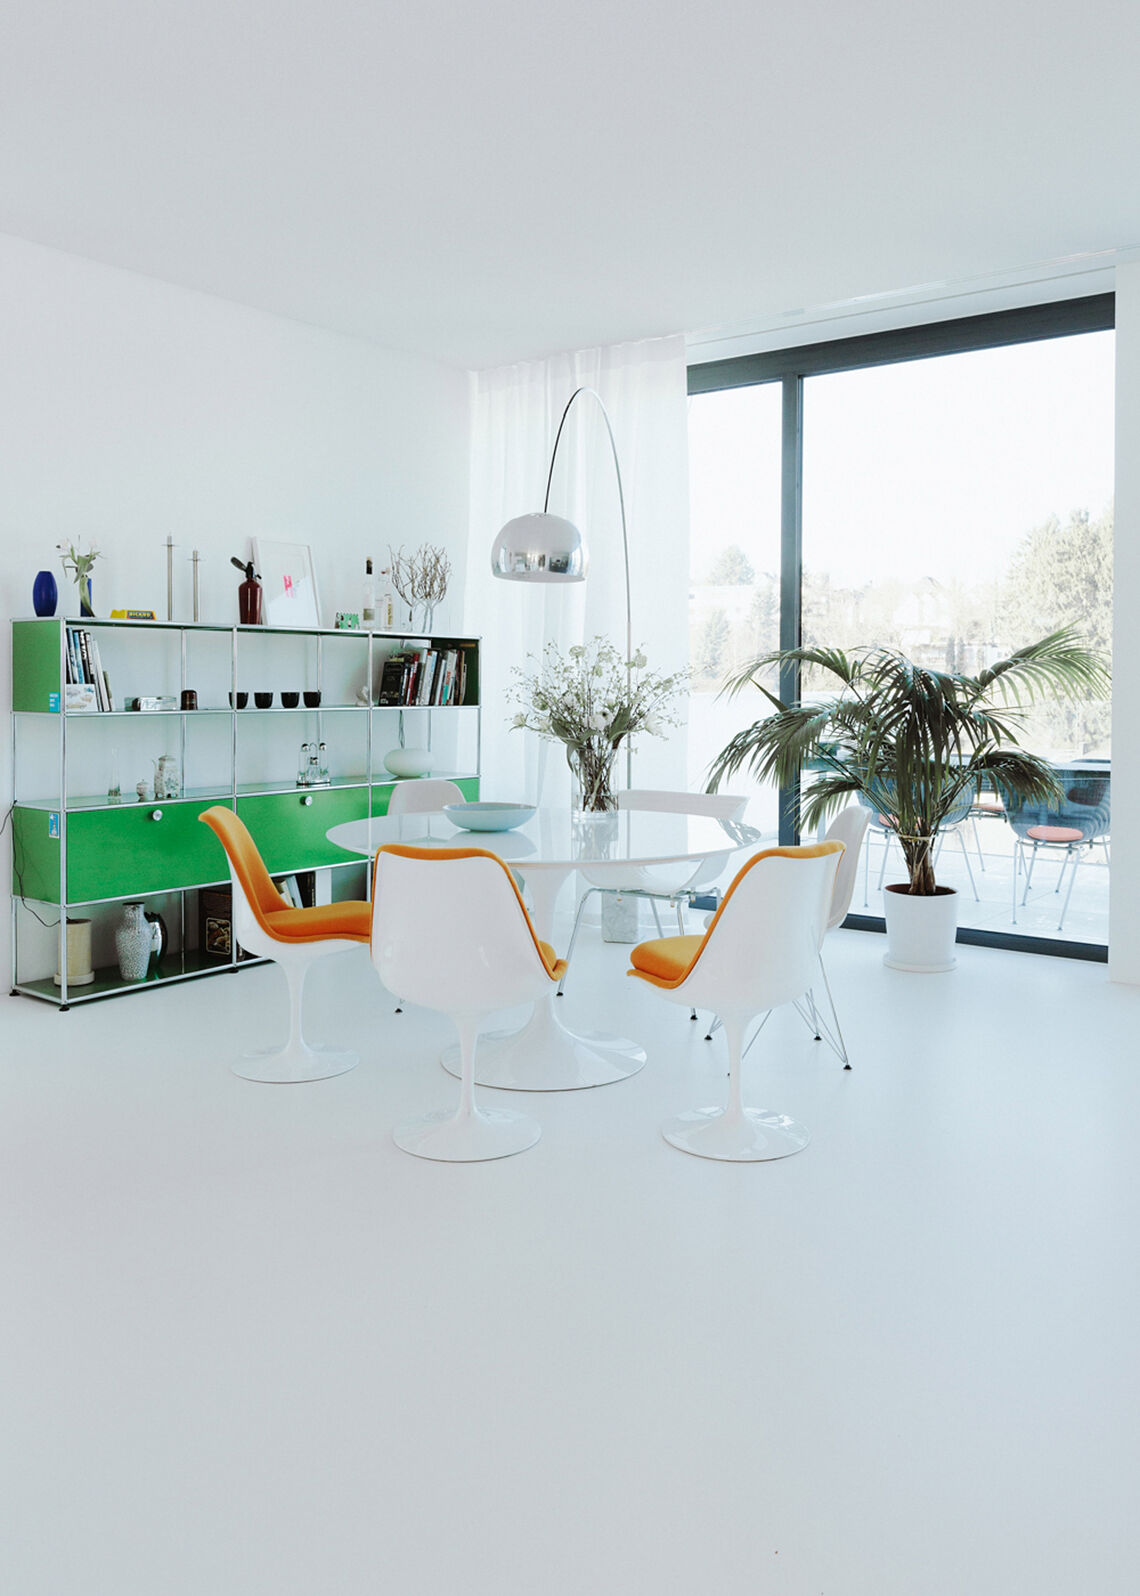 Offener Wohn-Essbereich mit rundem Esstisch, orangefarbenen Stühlen und grünem USM-Regal